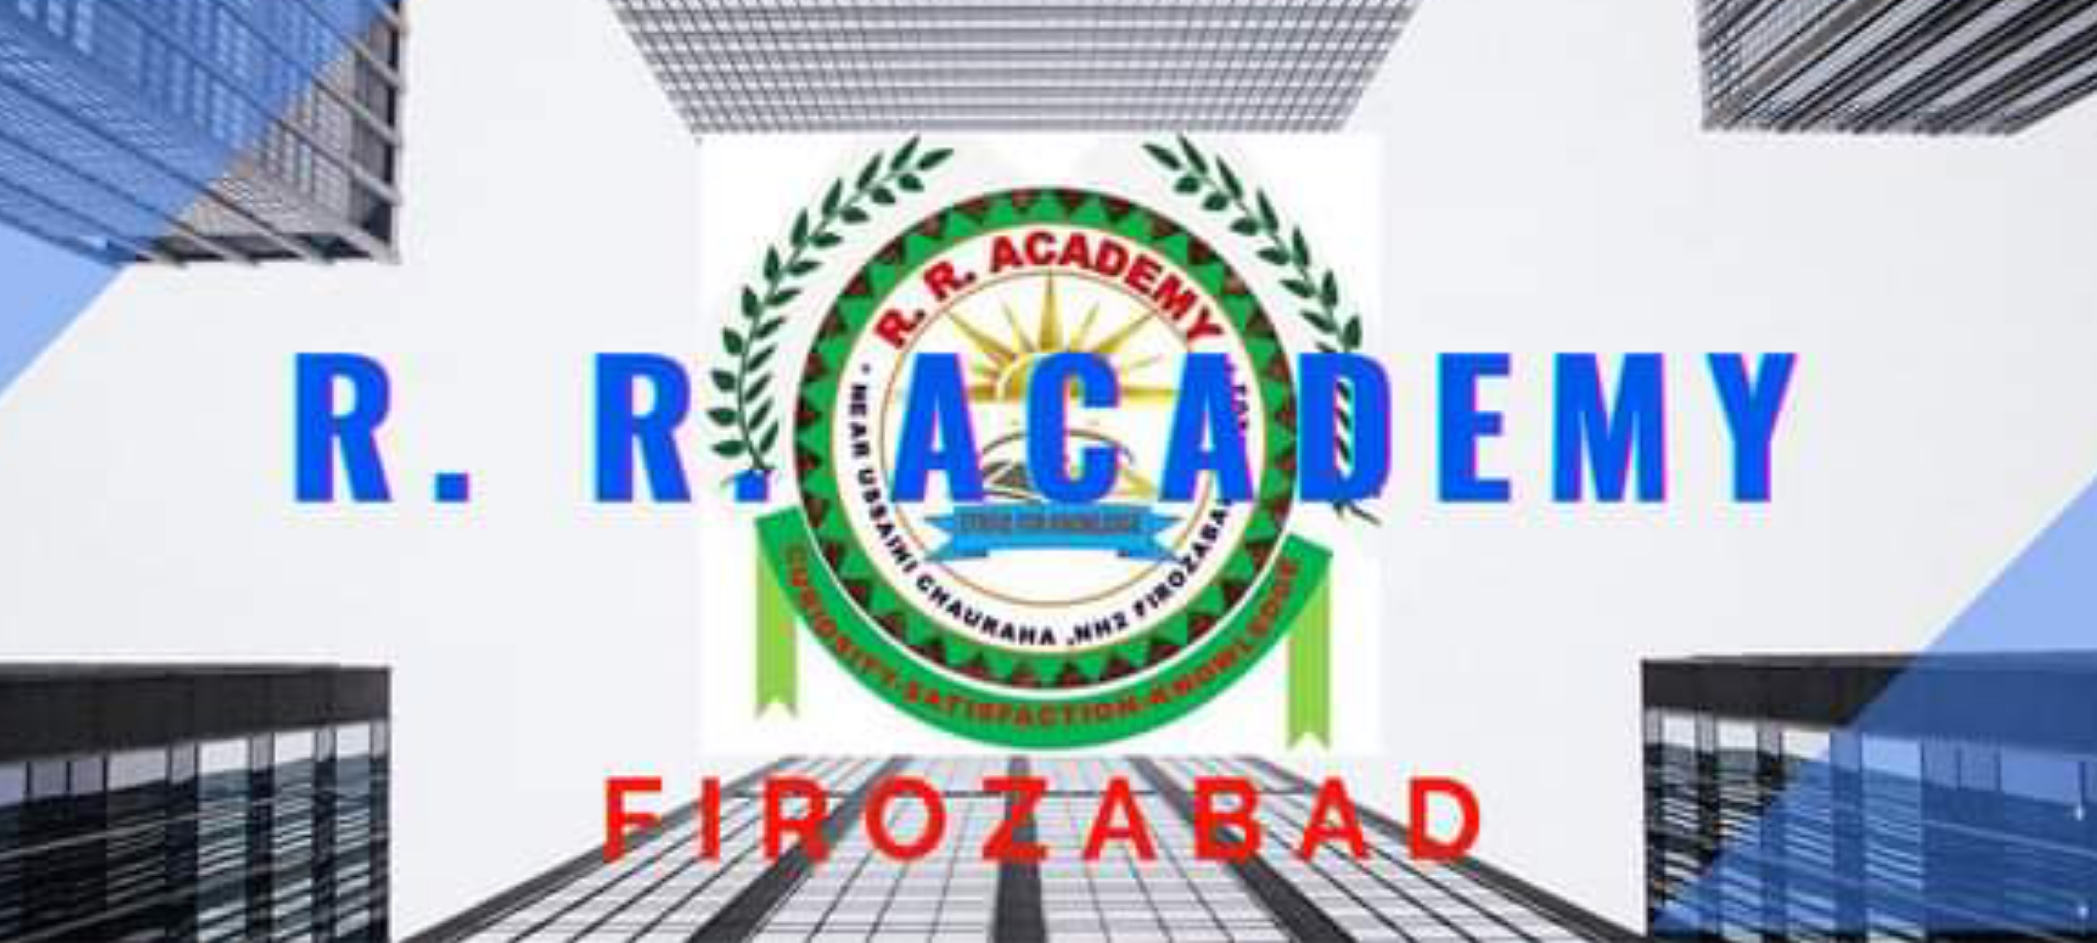 R. R. Academy Firozabad | Teachmint